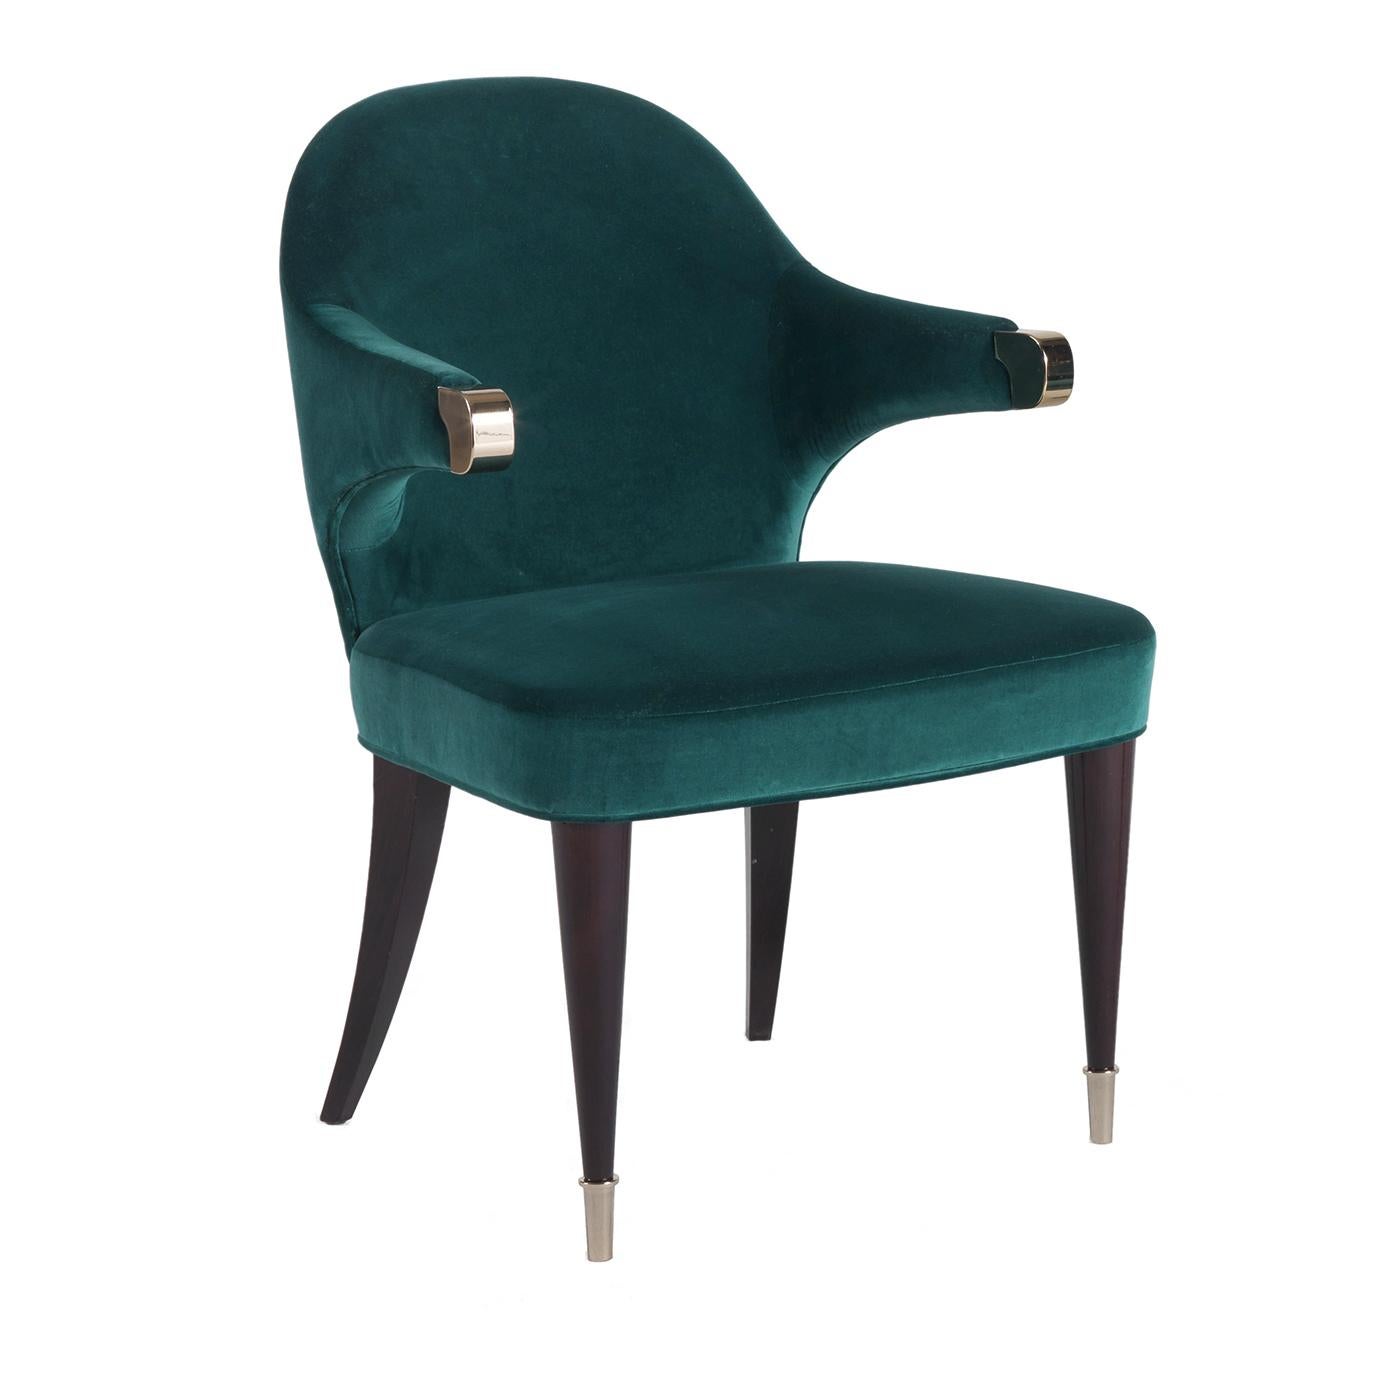 Élégante et moderne, cette chaise sophistiquée est un élément de décor fonctionnel remarquable qui enrichira le look d'un salon, d'une salle à manger ou d'une entrée. La structure en bois massif a une finition ébène et présente des accoudoirs de